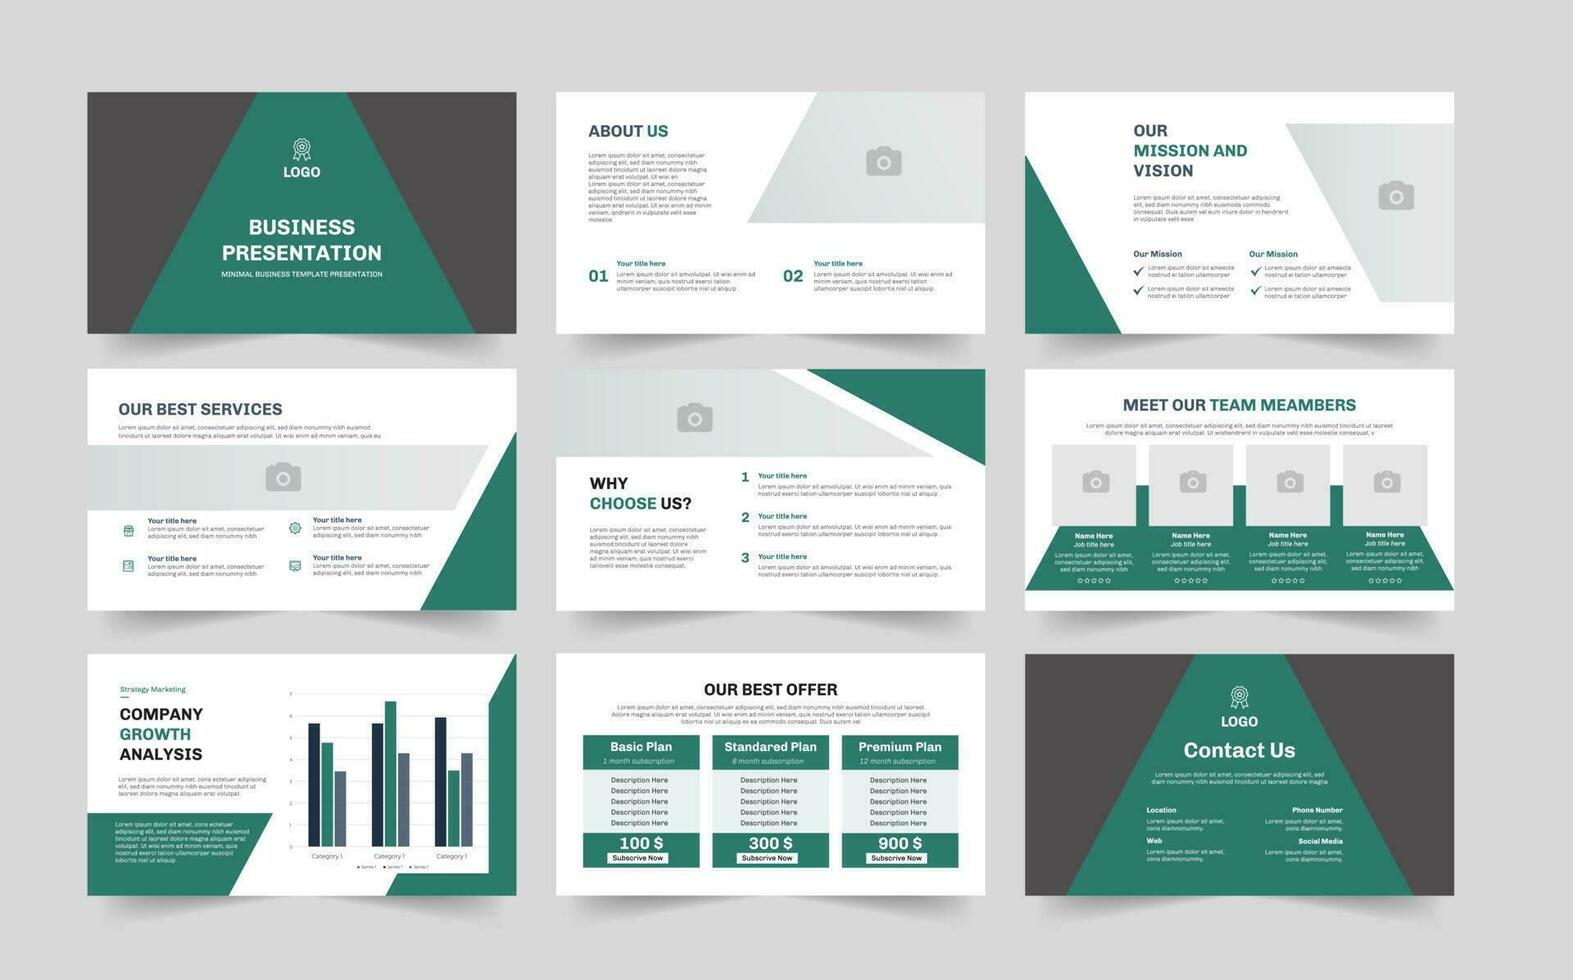 Business  presentation slides template design. Use for Creative keynote presentation background, brochure design, website slider, business proposal. vector